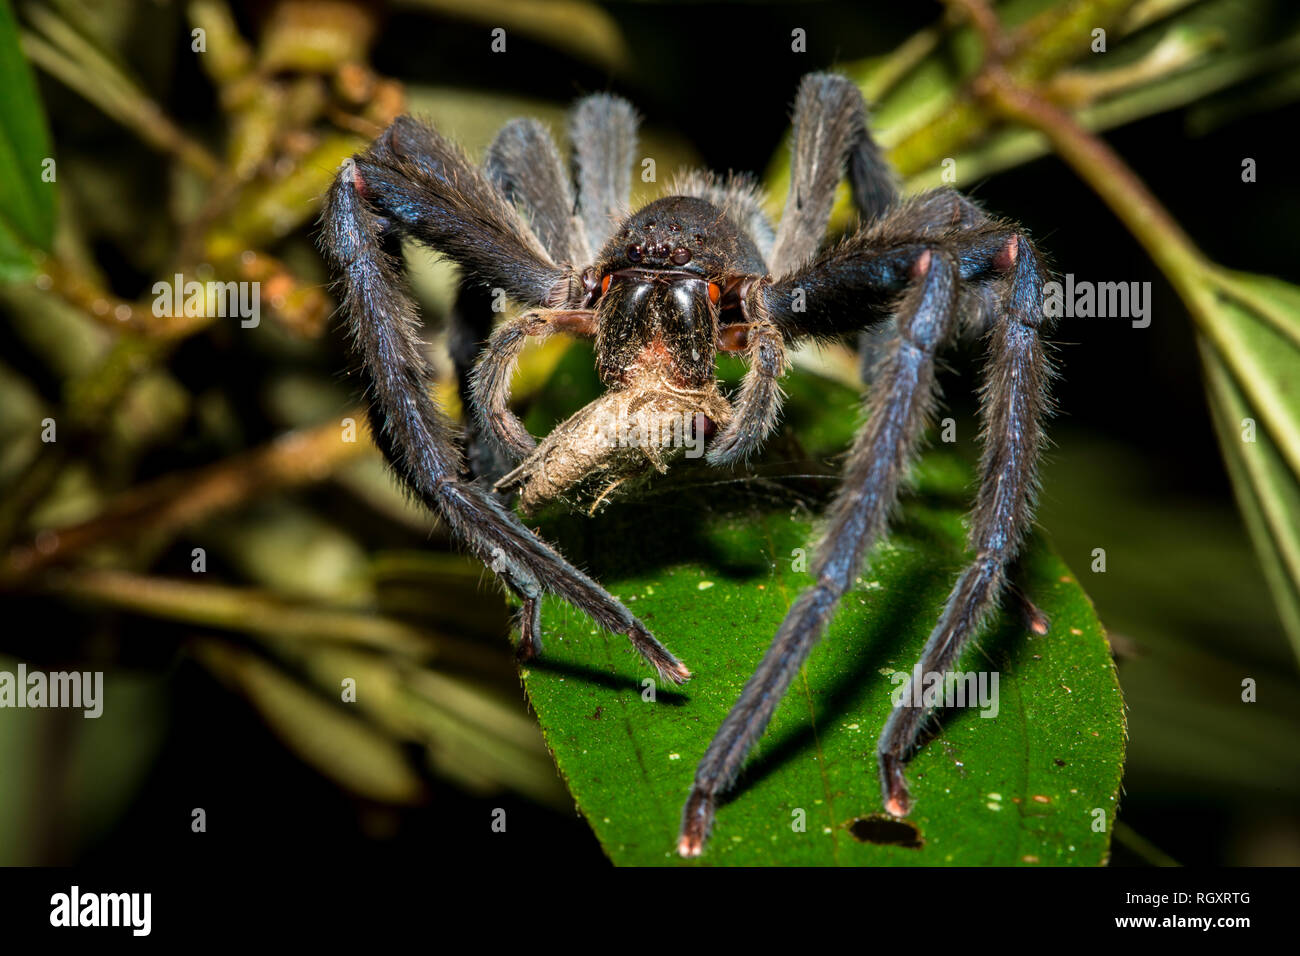 Eine Spinne, die sich nachts an einer Motte im Danum Valley Rainforest,  Sabah, Borneo, Malaysia ernährt Stockfotografie - Alamy